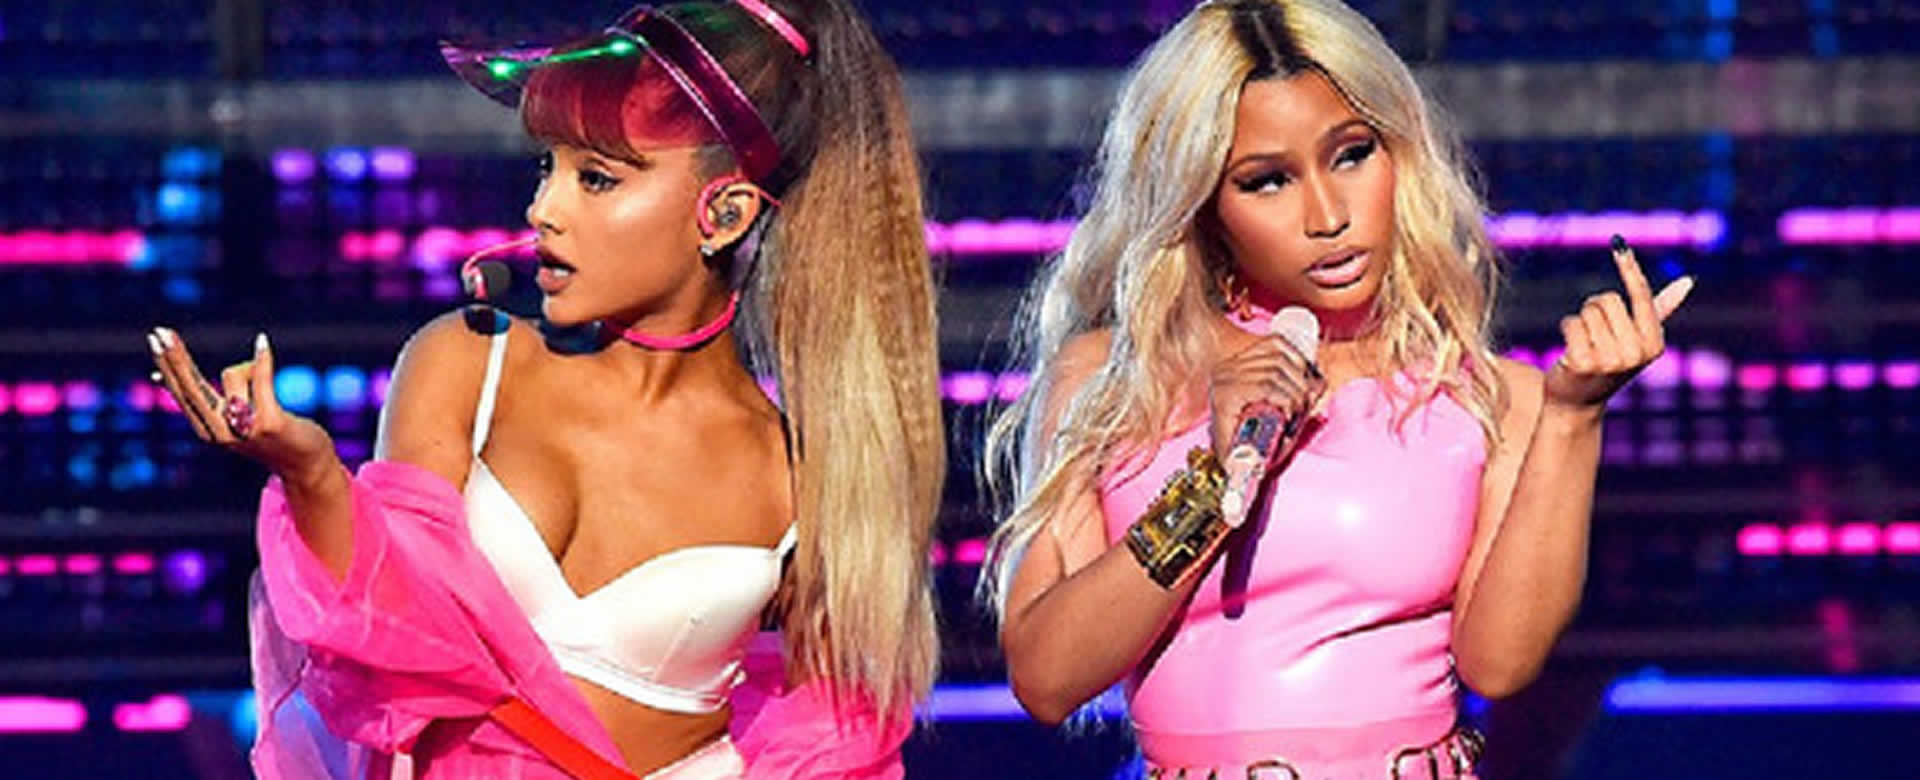 Ariana Grande y Nicki Minaj, unen sus voces nuevamente